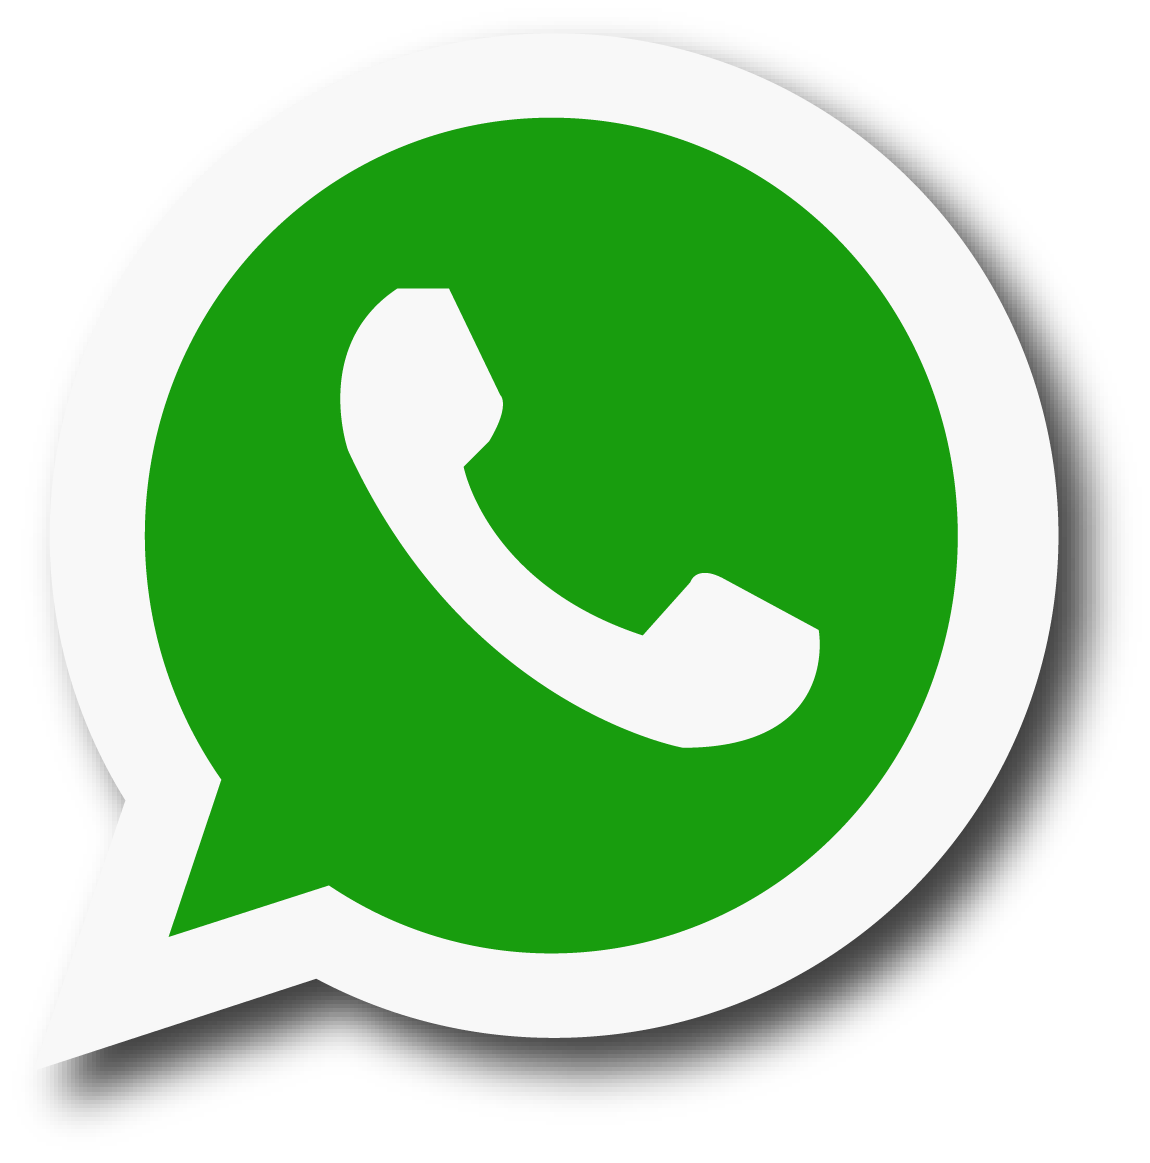 L’SMS sta morendo per la crescita di WhatsApp e Telegram